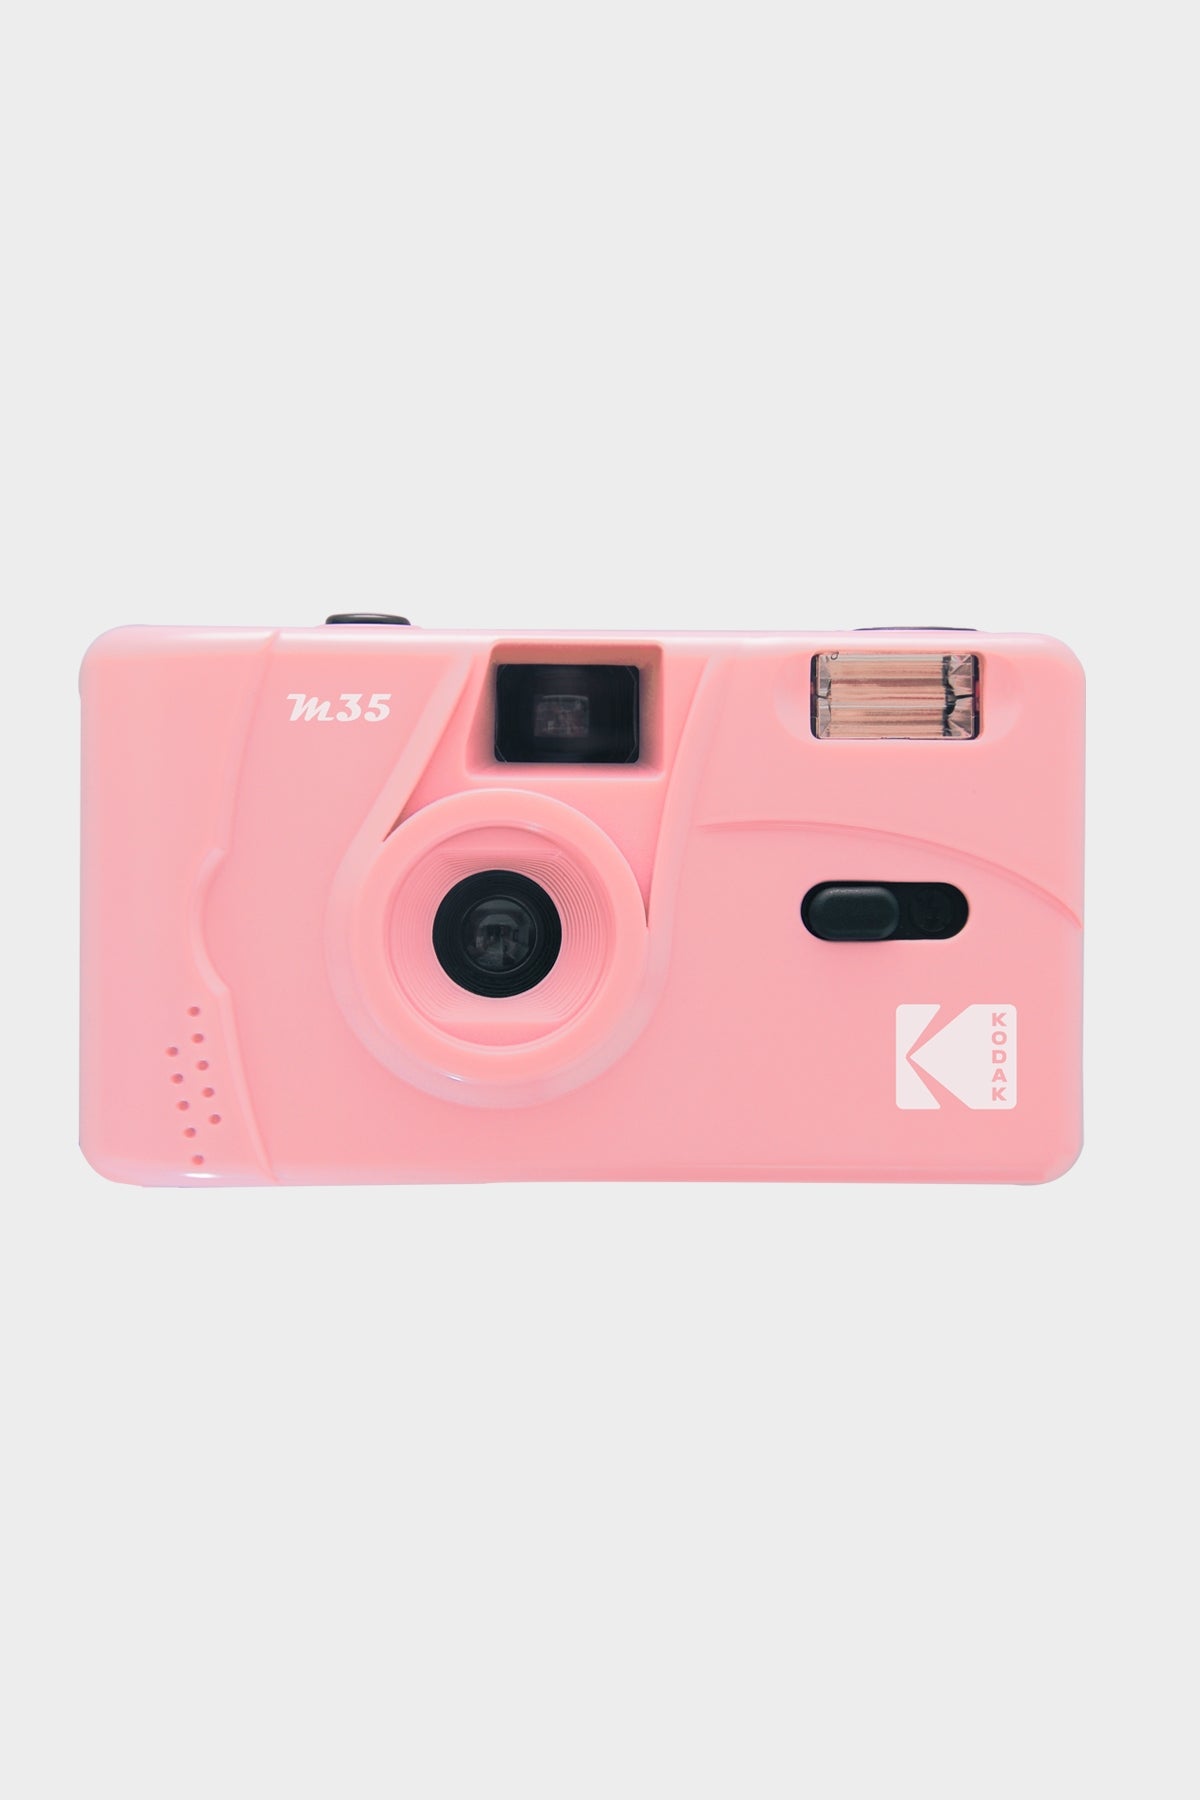 Kodak M35 Reusable Film Camera Peach Pink